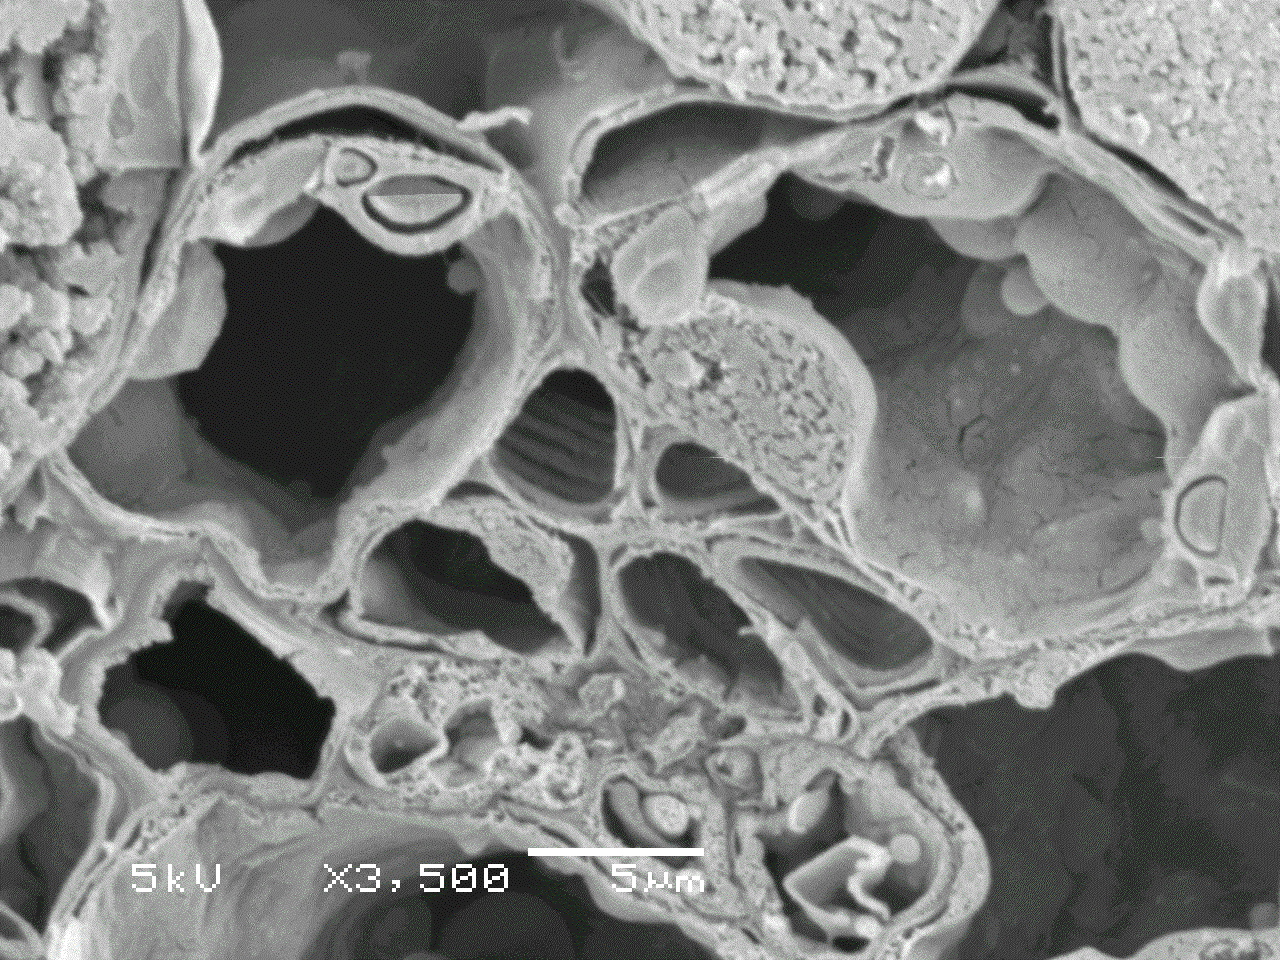 11 ヤブツバキの海綿状組織細胞断面